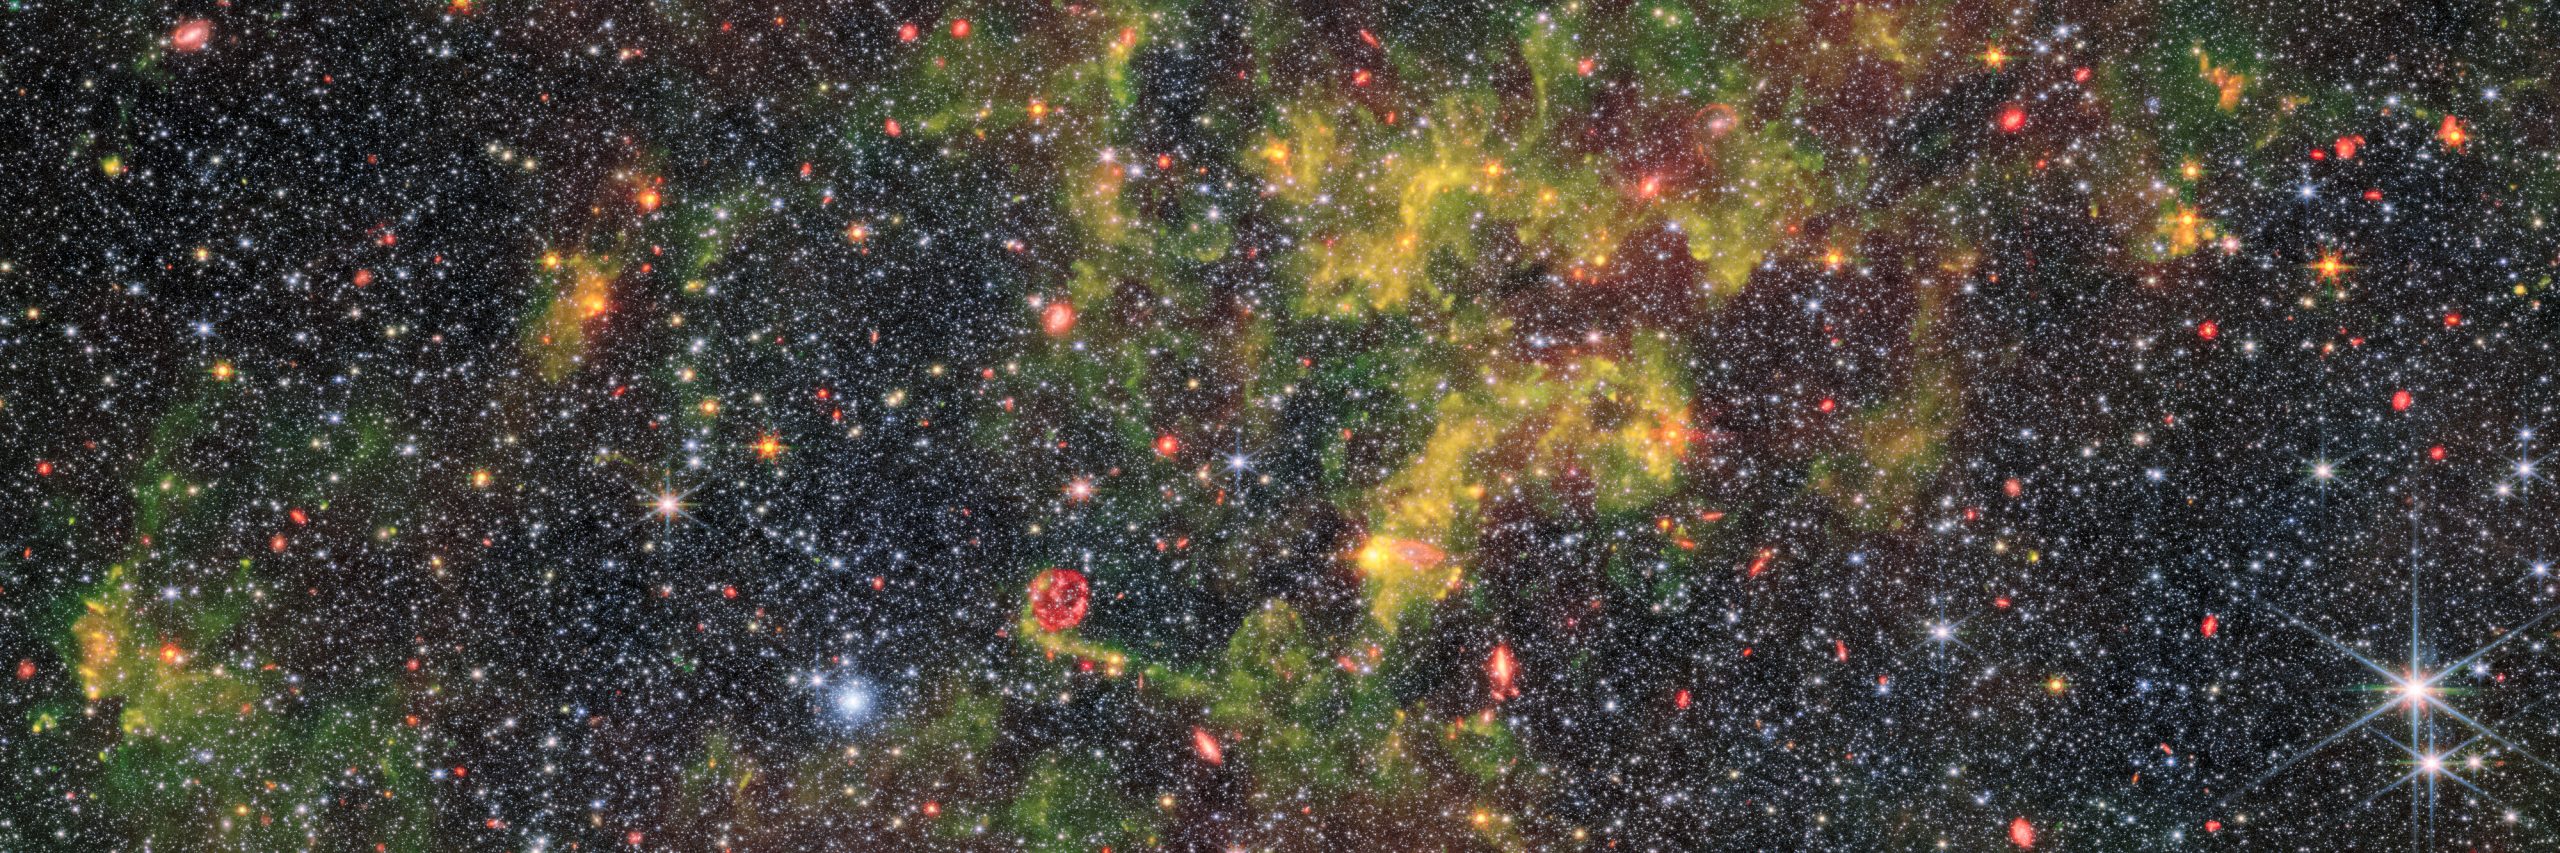 The irregular galaxy NGC 6822 as seen through James Webb's lenses. ESA/NASA.